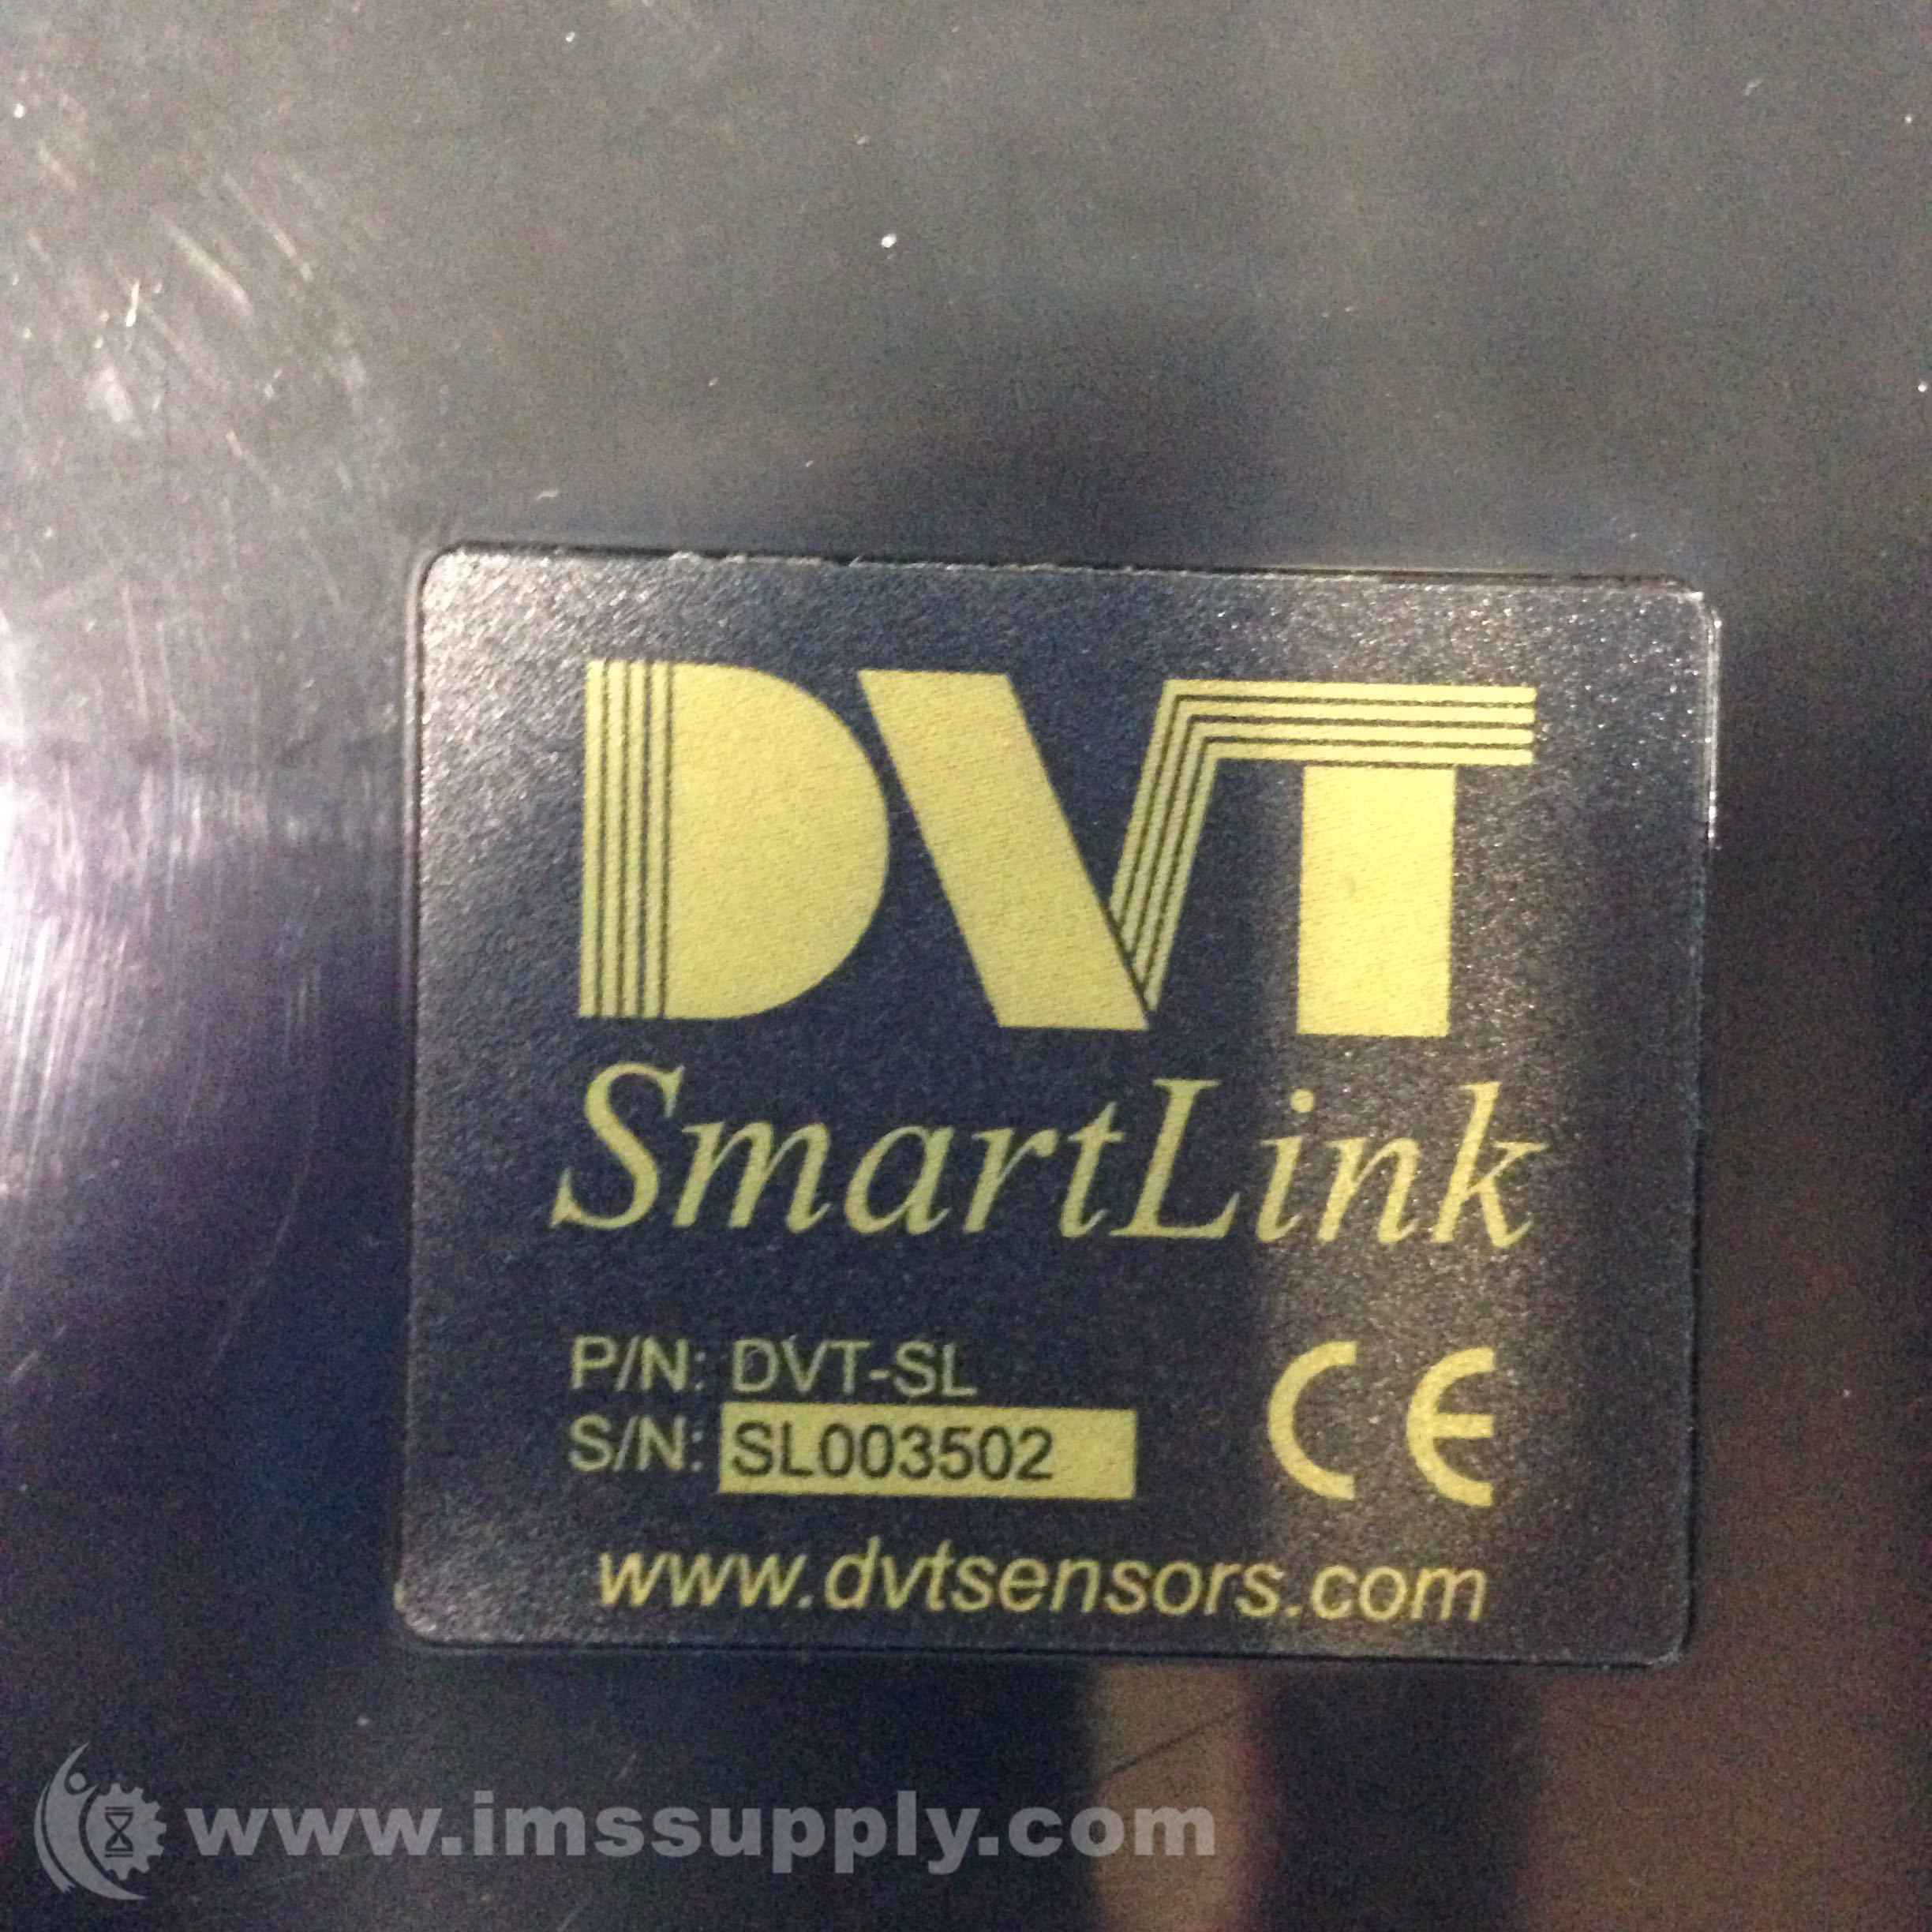 DVT SMARTLINK INTERFACE USED DVT-SL